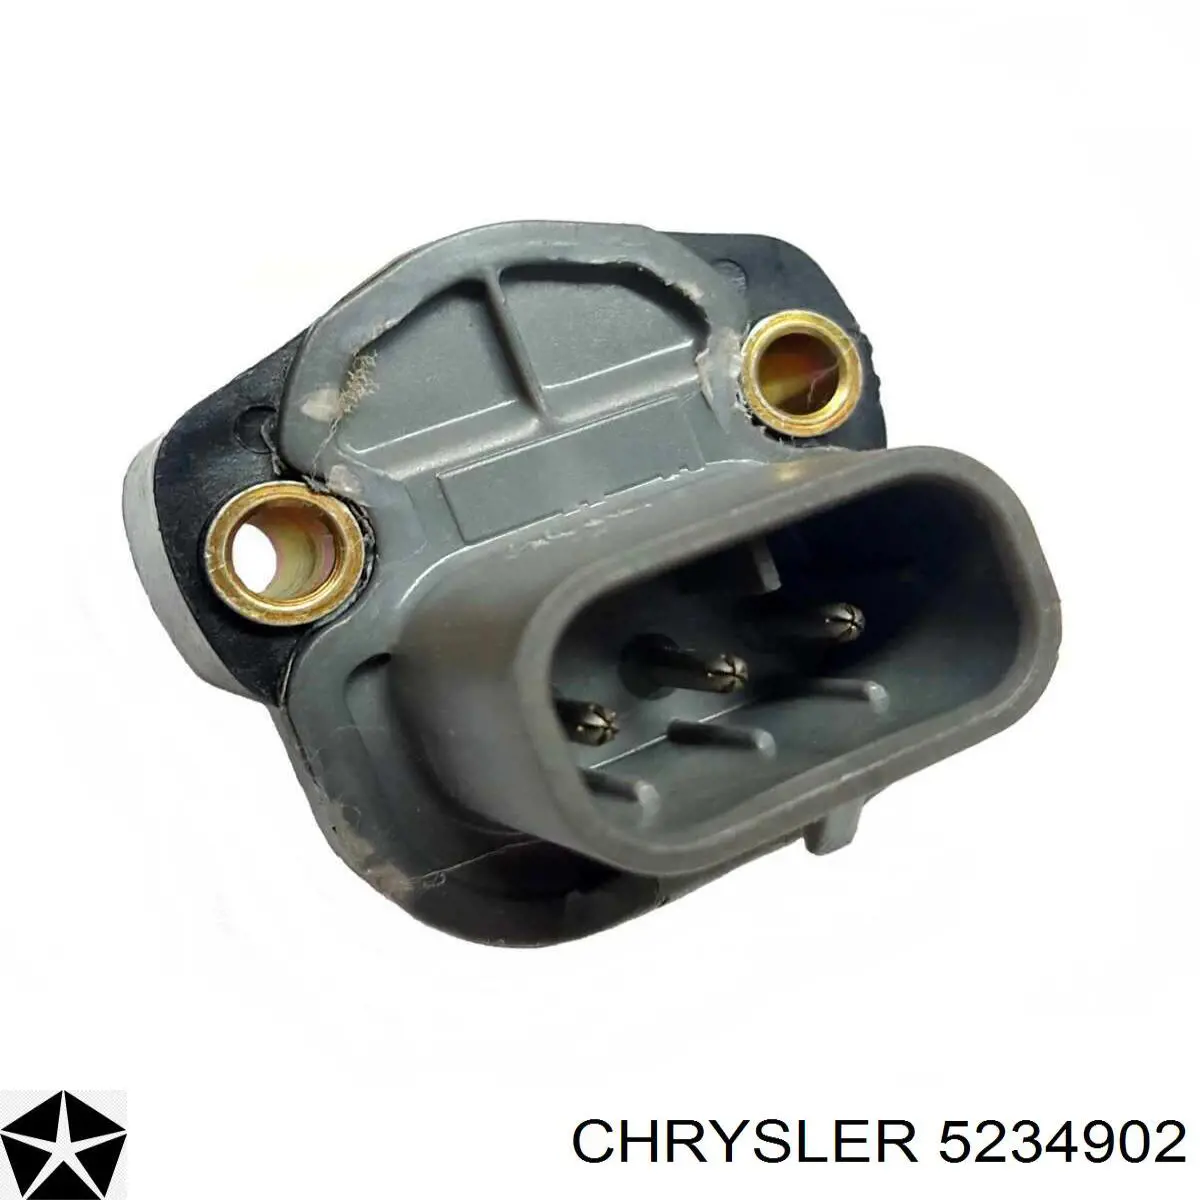 5234902 Chrysler sensor tps